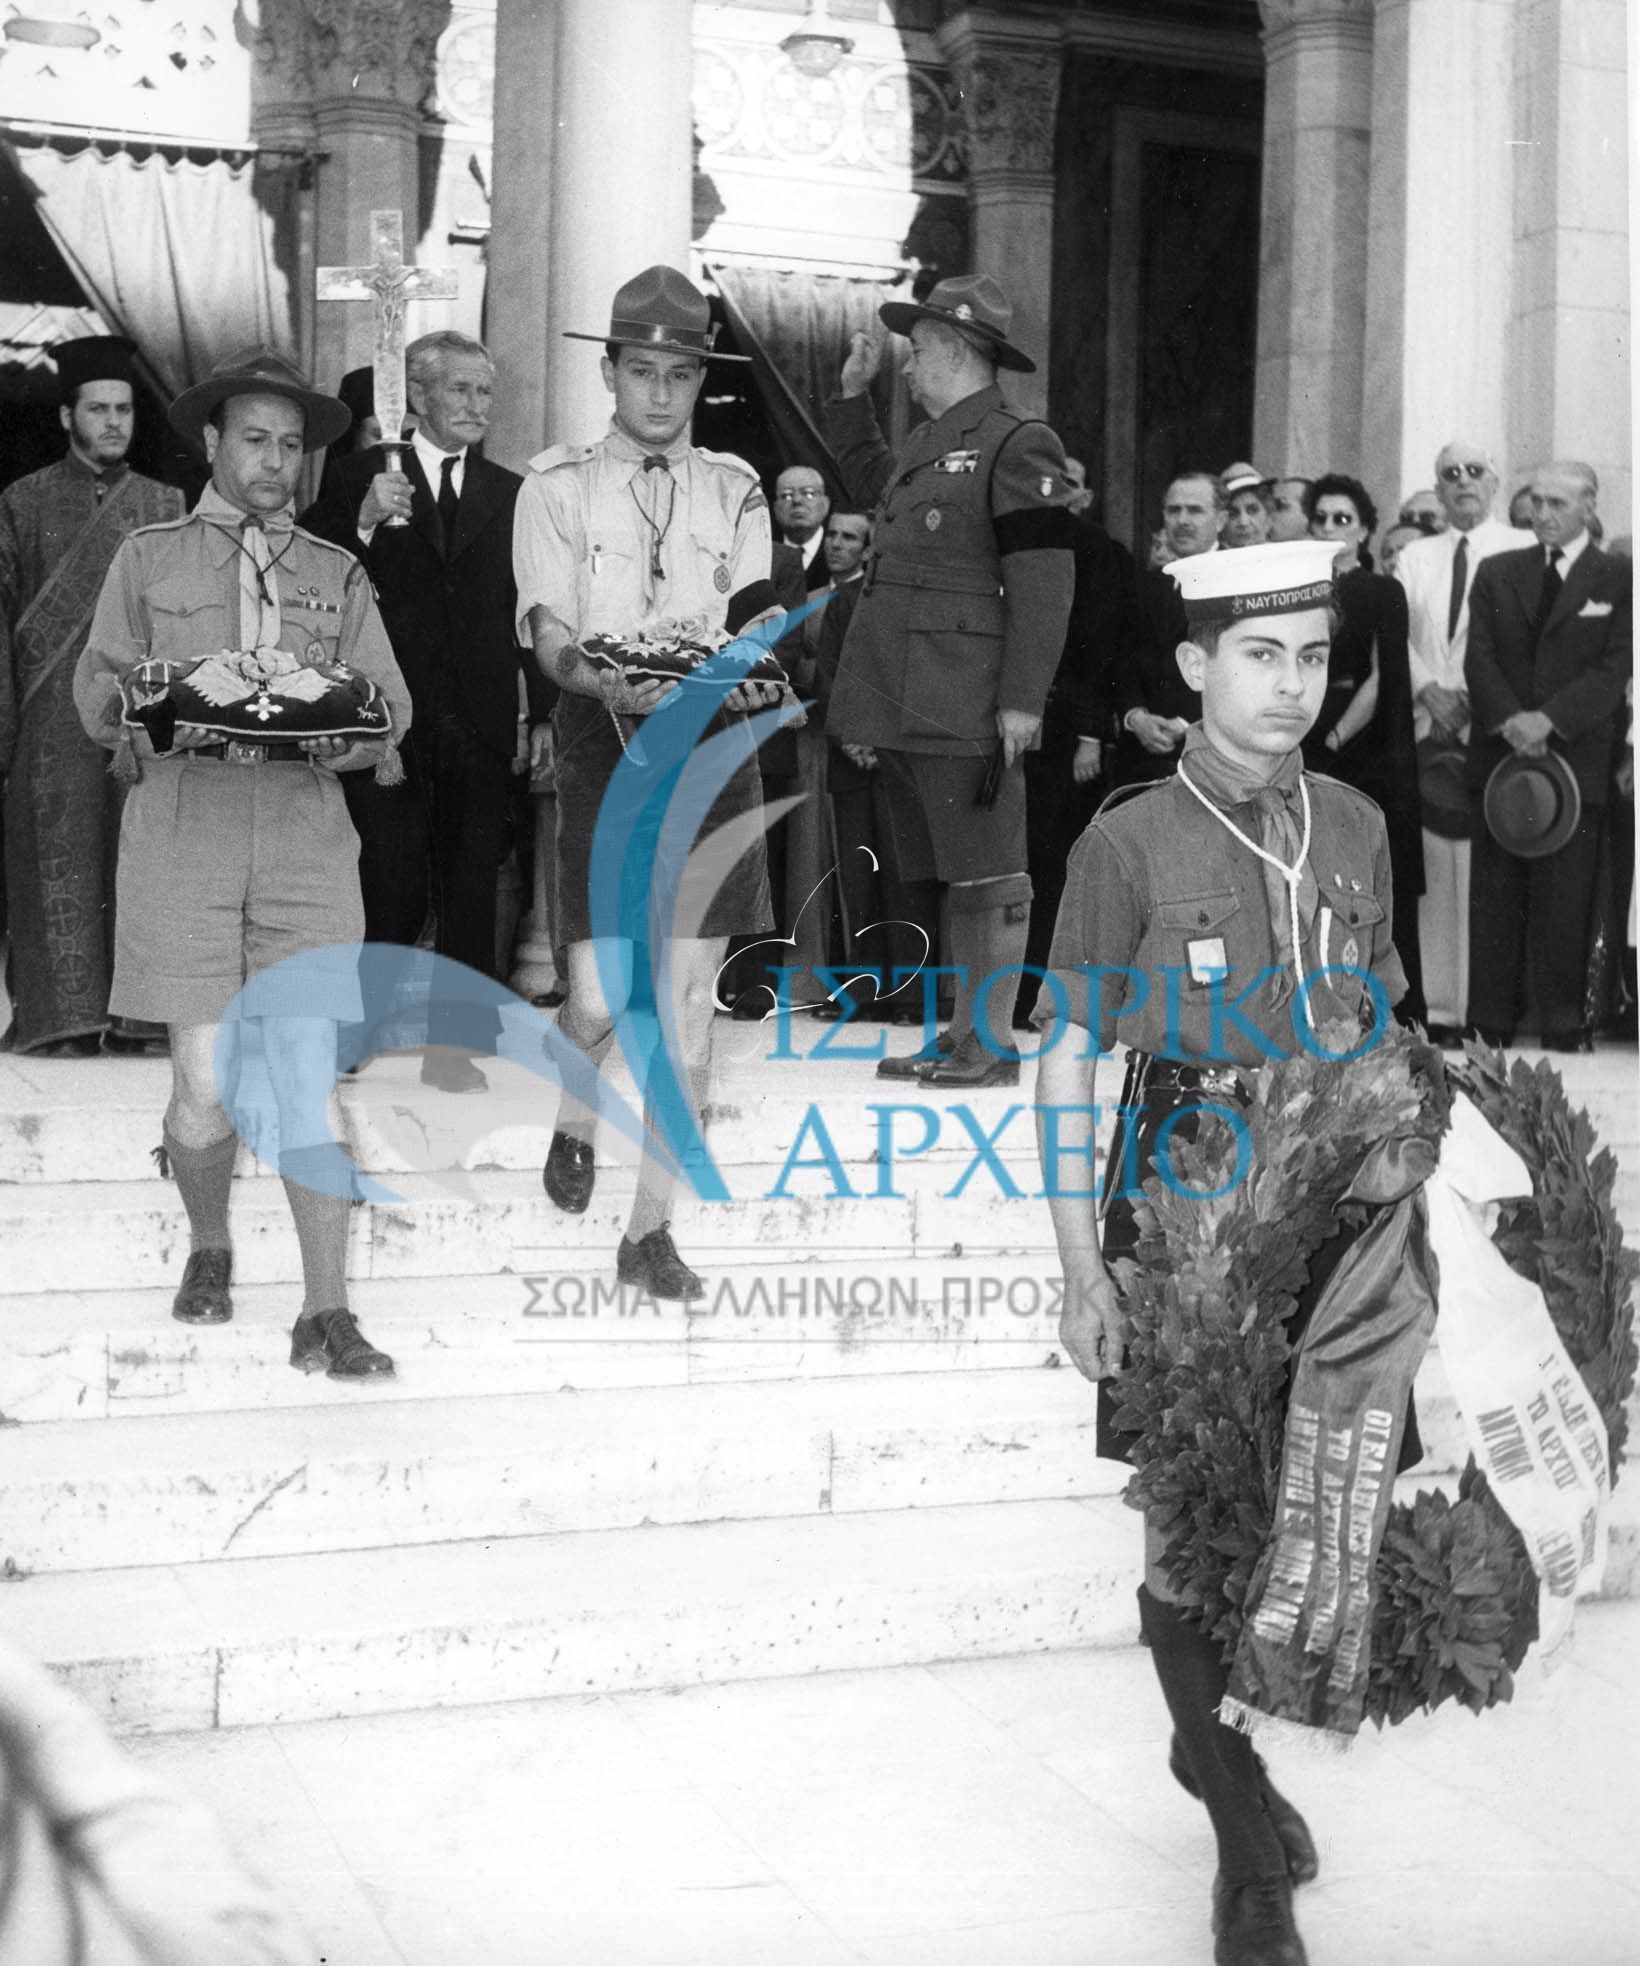 Πρόσκοποι μεταφέρουν τους μεγαλόσταυρους και τα παράσημα στην κηδεία του Αρχιπροσκόπου Αντώνη Μπενάκη το 1954. Διακρίνεται σε μικρή ηλικία ο Ι. Χαρίτος.